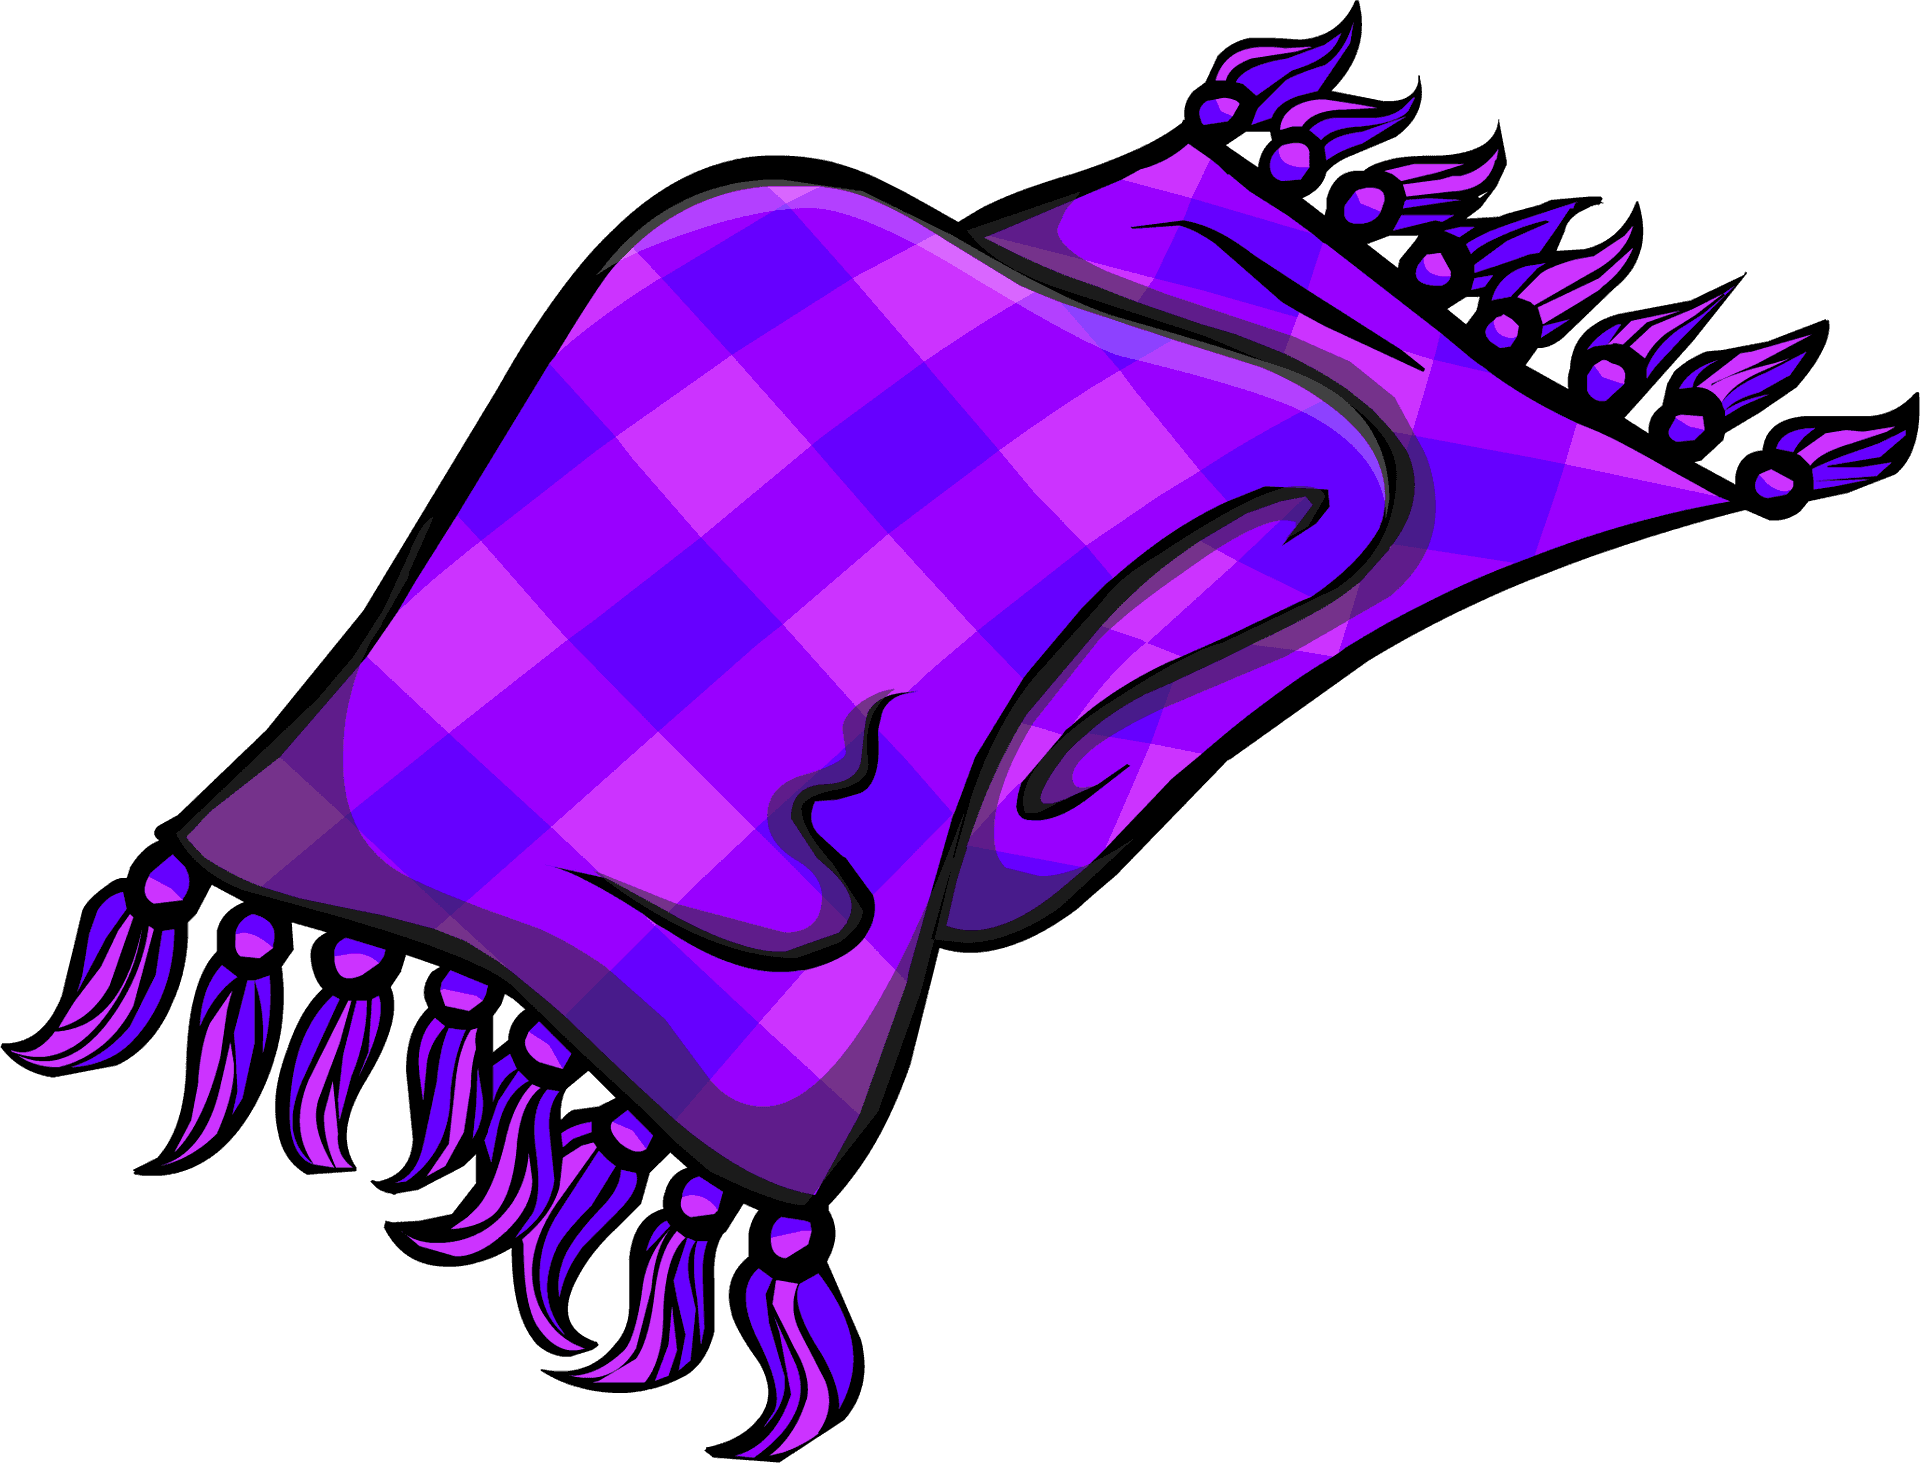 Purple Plaid Scarf Illustration PNG image